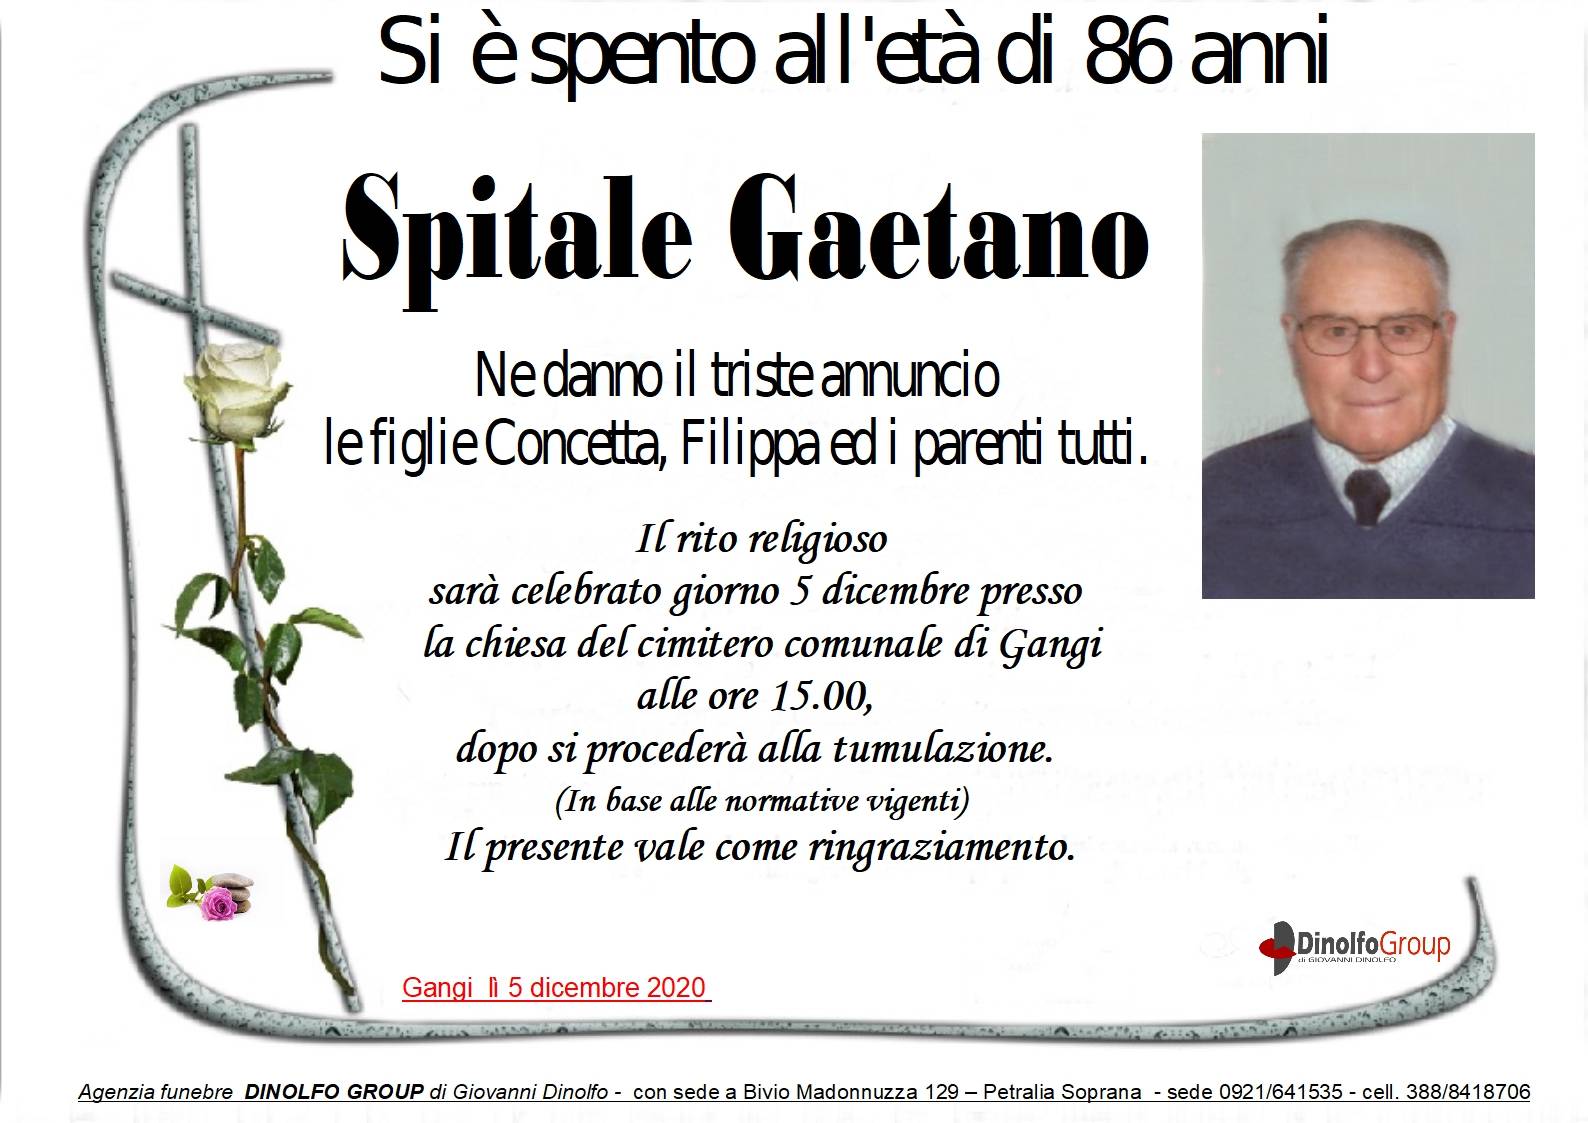 Gaetano Spitale